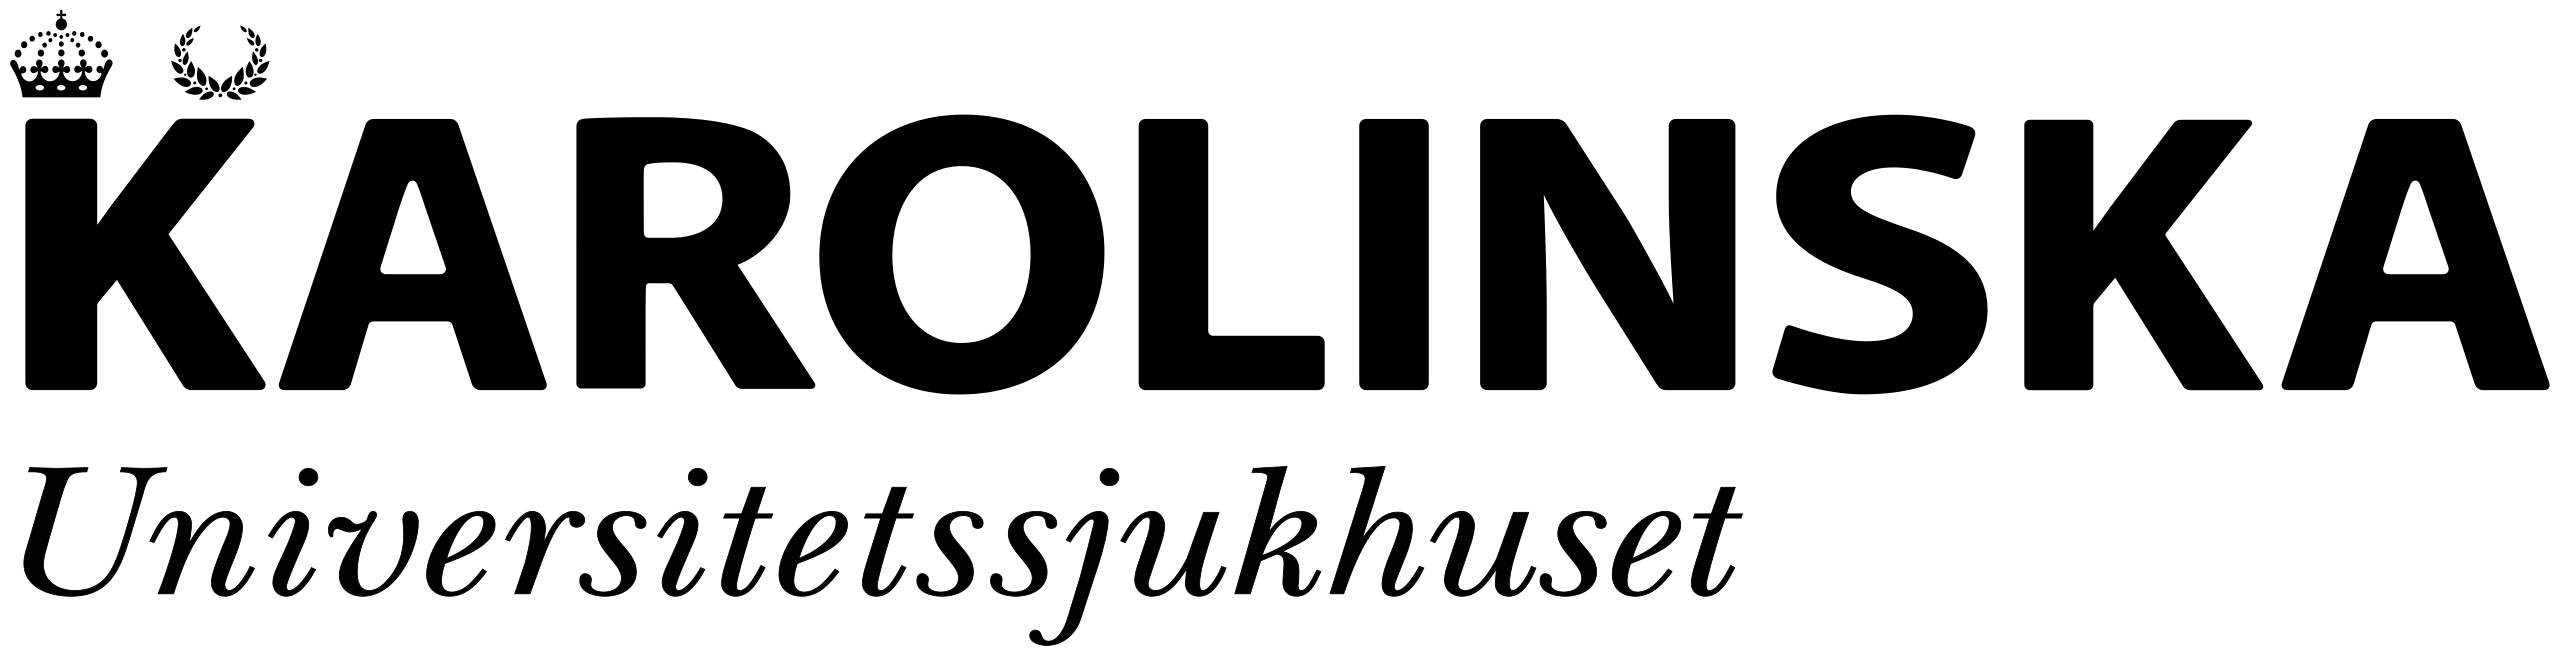 Karolinska-logo